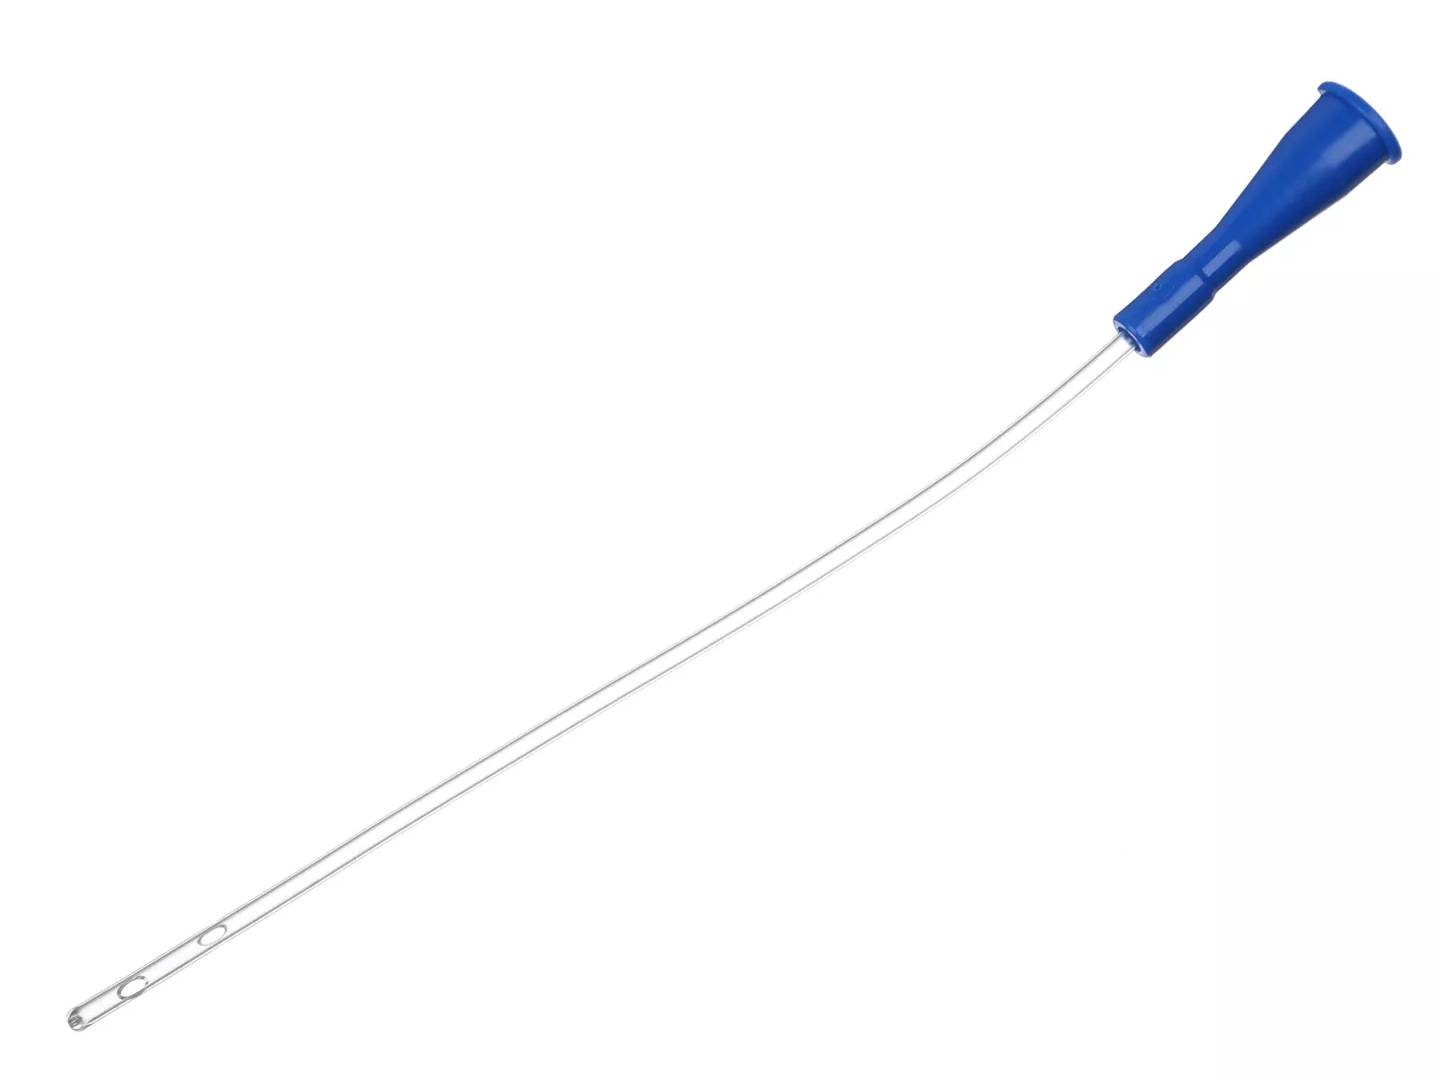 Катетер Нелатона женский CH-08, длина 20см, диаметр 1,7/2,7мм, цвет синий, стерильный